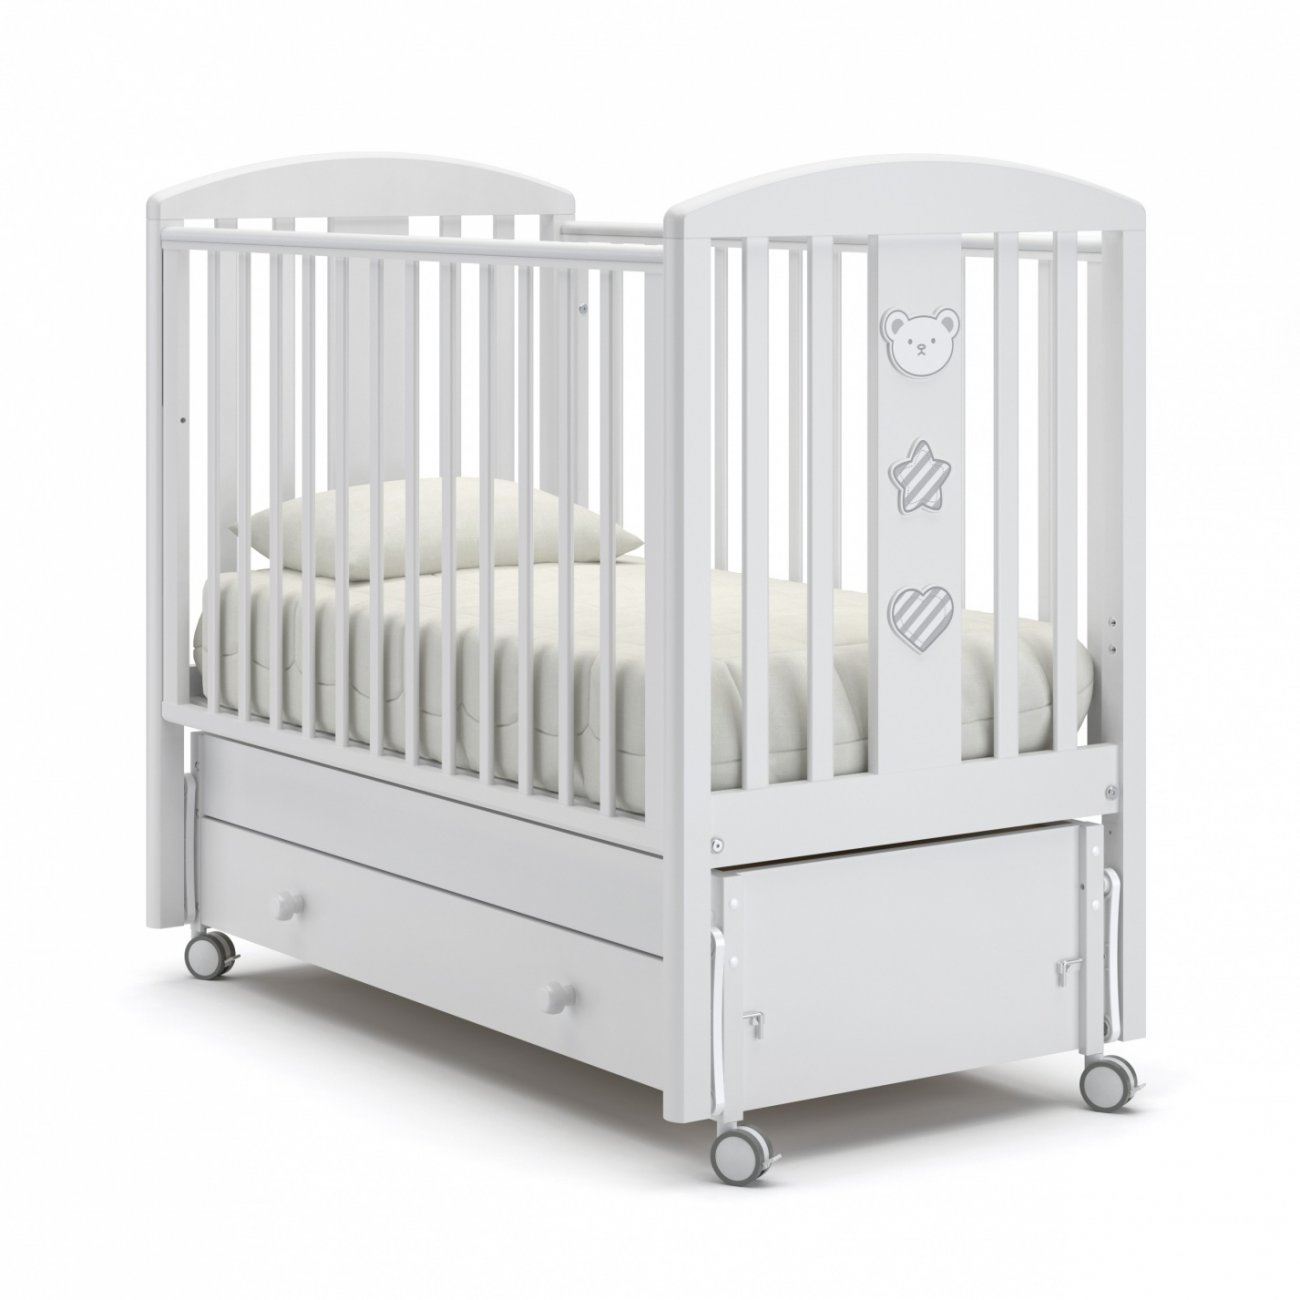  Кровать детская Гандылян Дени Люкс с продольным маятником Цвет: Белый